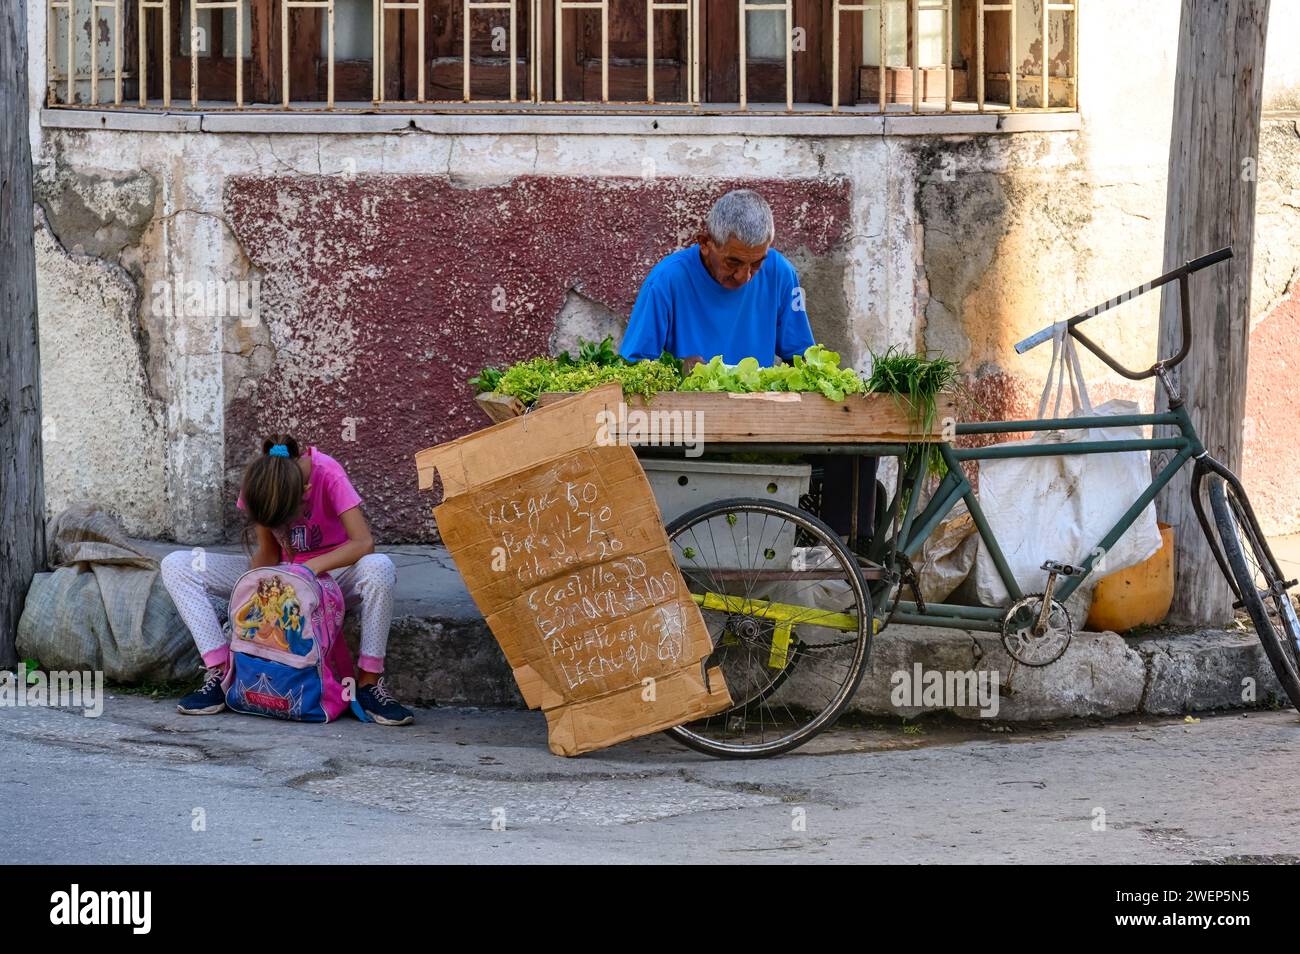 uomo anziano che vende verdure nell'angolo della città, santa clara, cuba Foto Stock